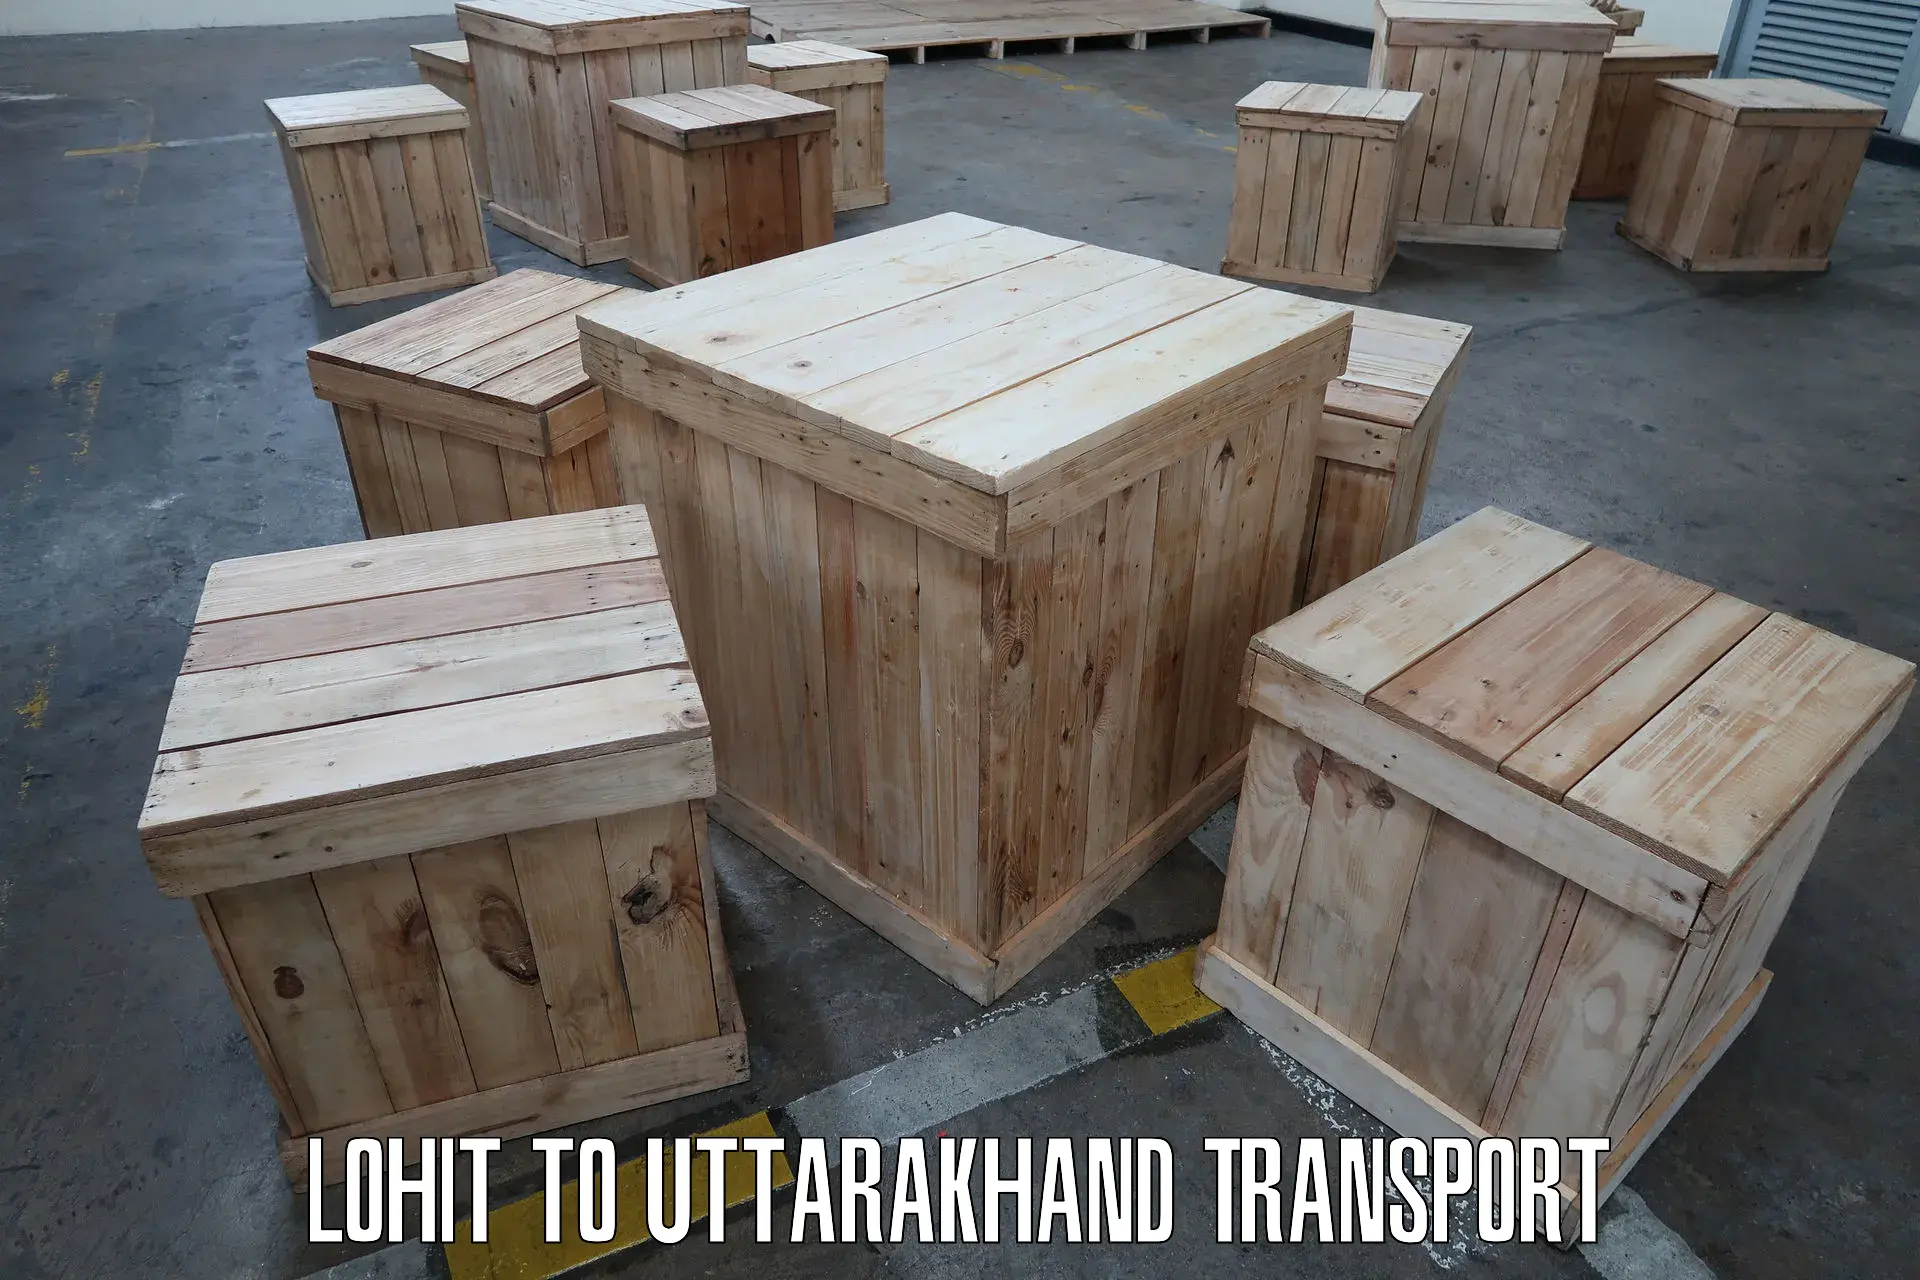 Luggage transport services Lohit to Uttarakhand